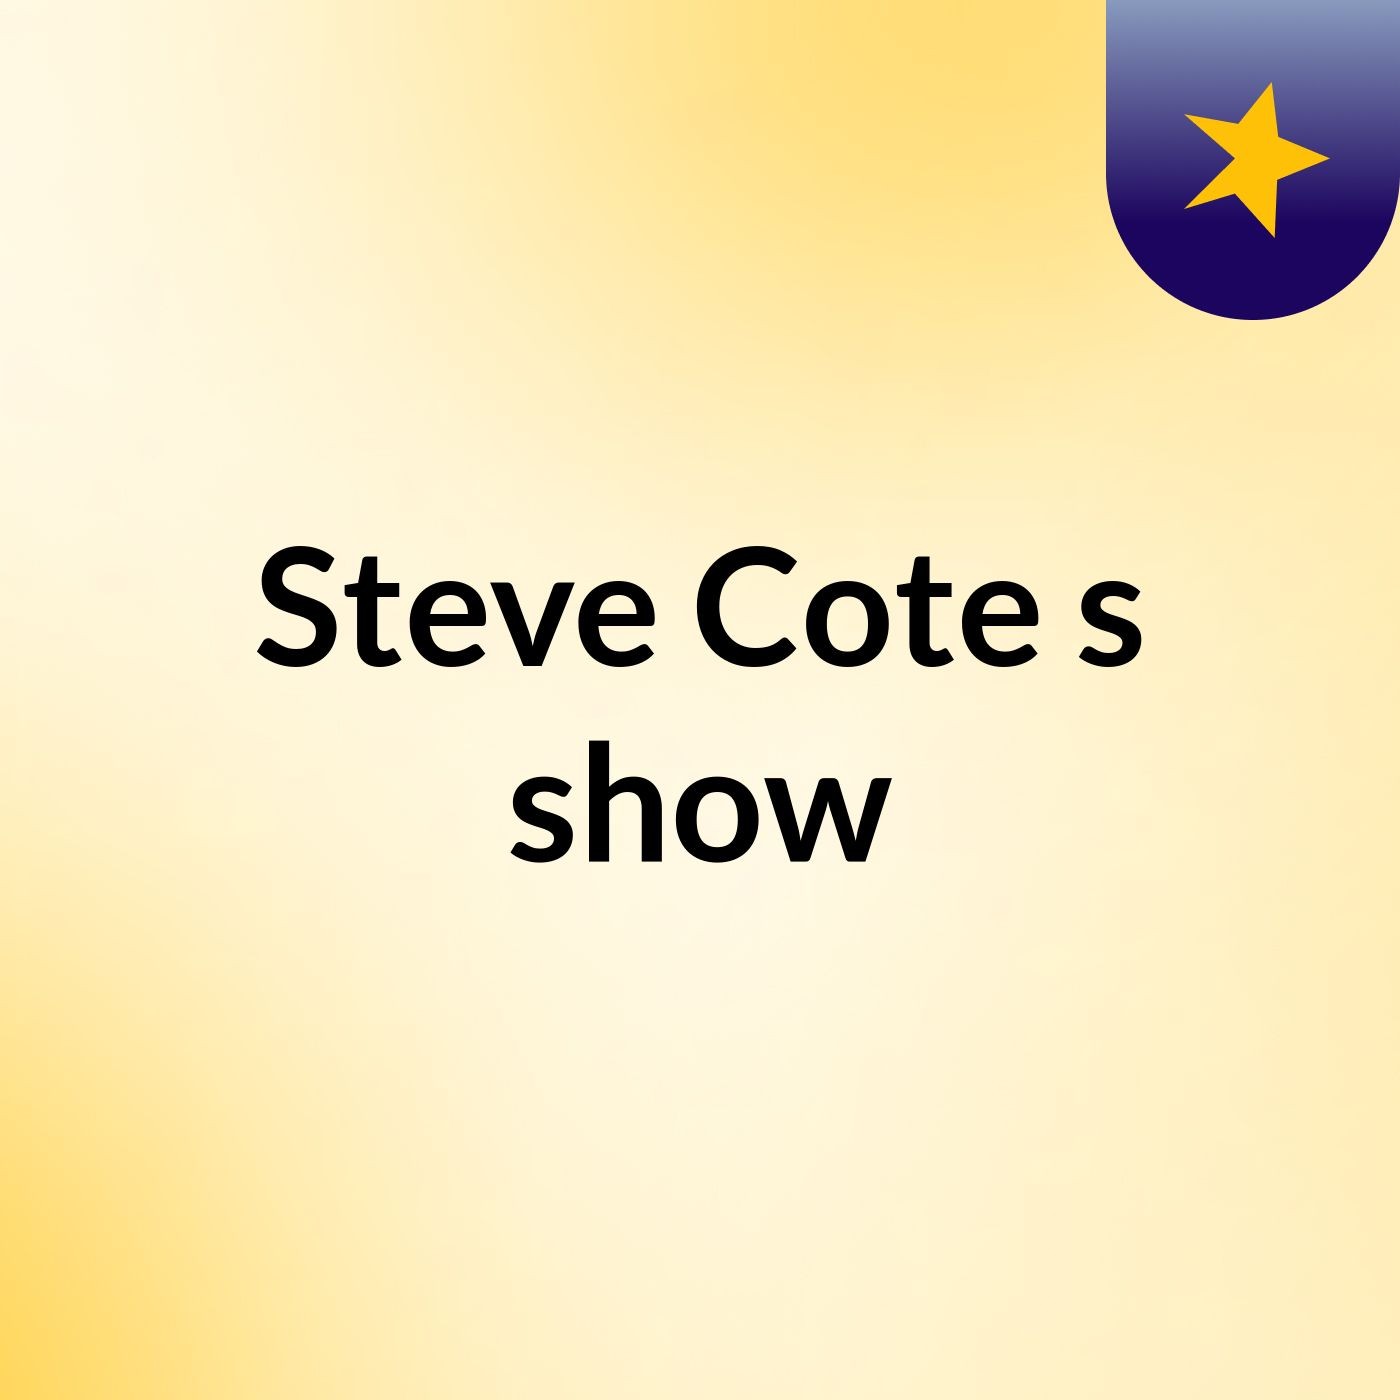 Steve Cote's show